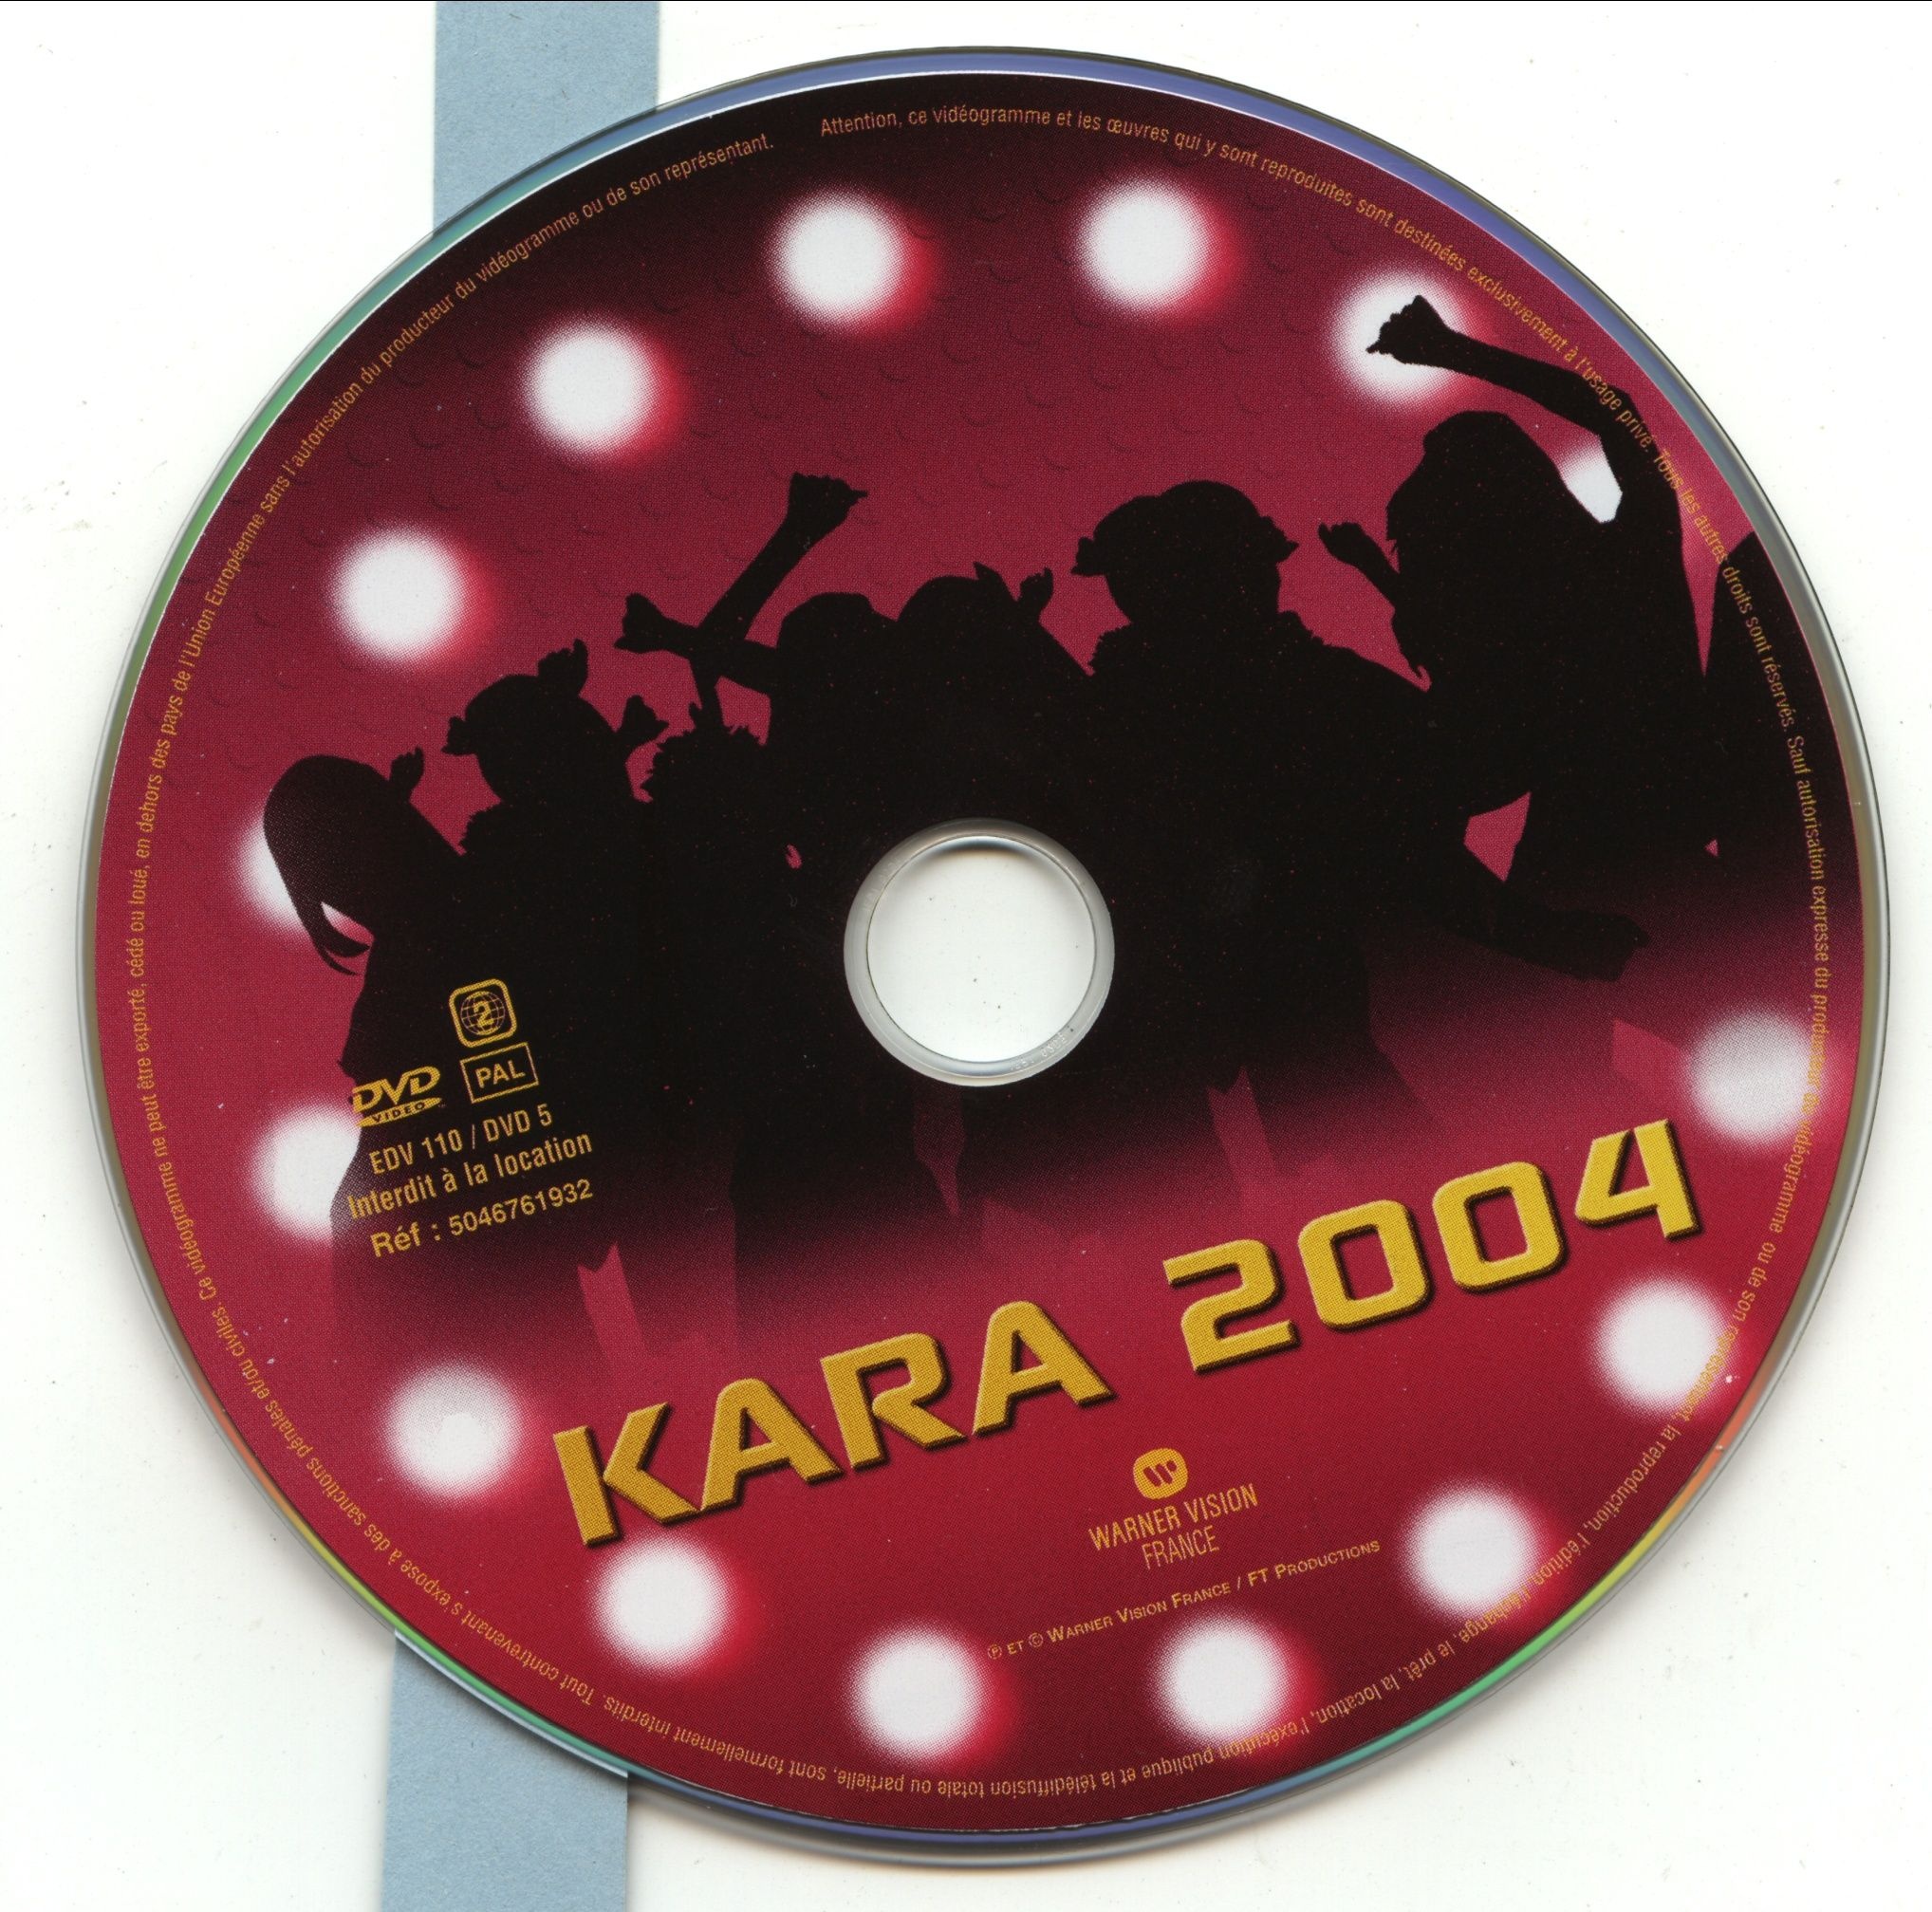 Kara 2004